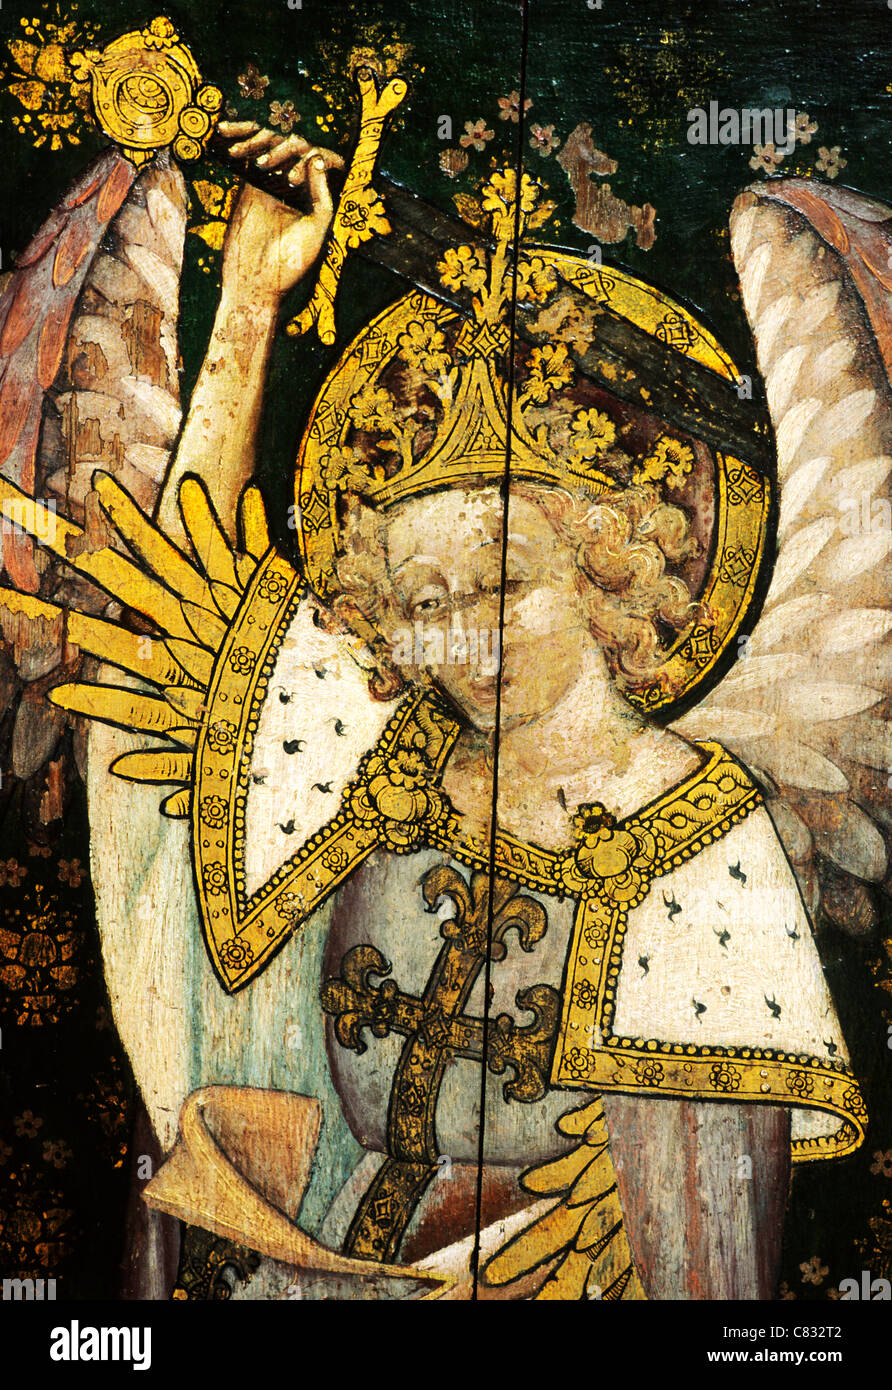 Ranworth, Norfolk, jubé, Saint Michel Archange, détail, maniant épée médiévale peintures peinture écrans Anglais Banque D'Images